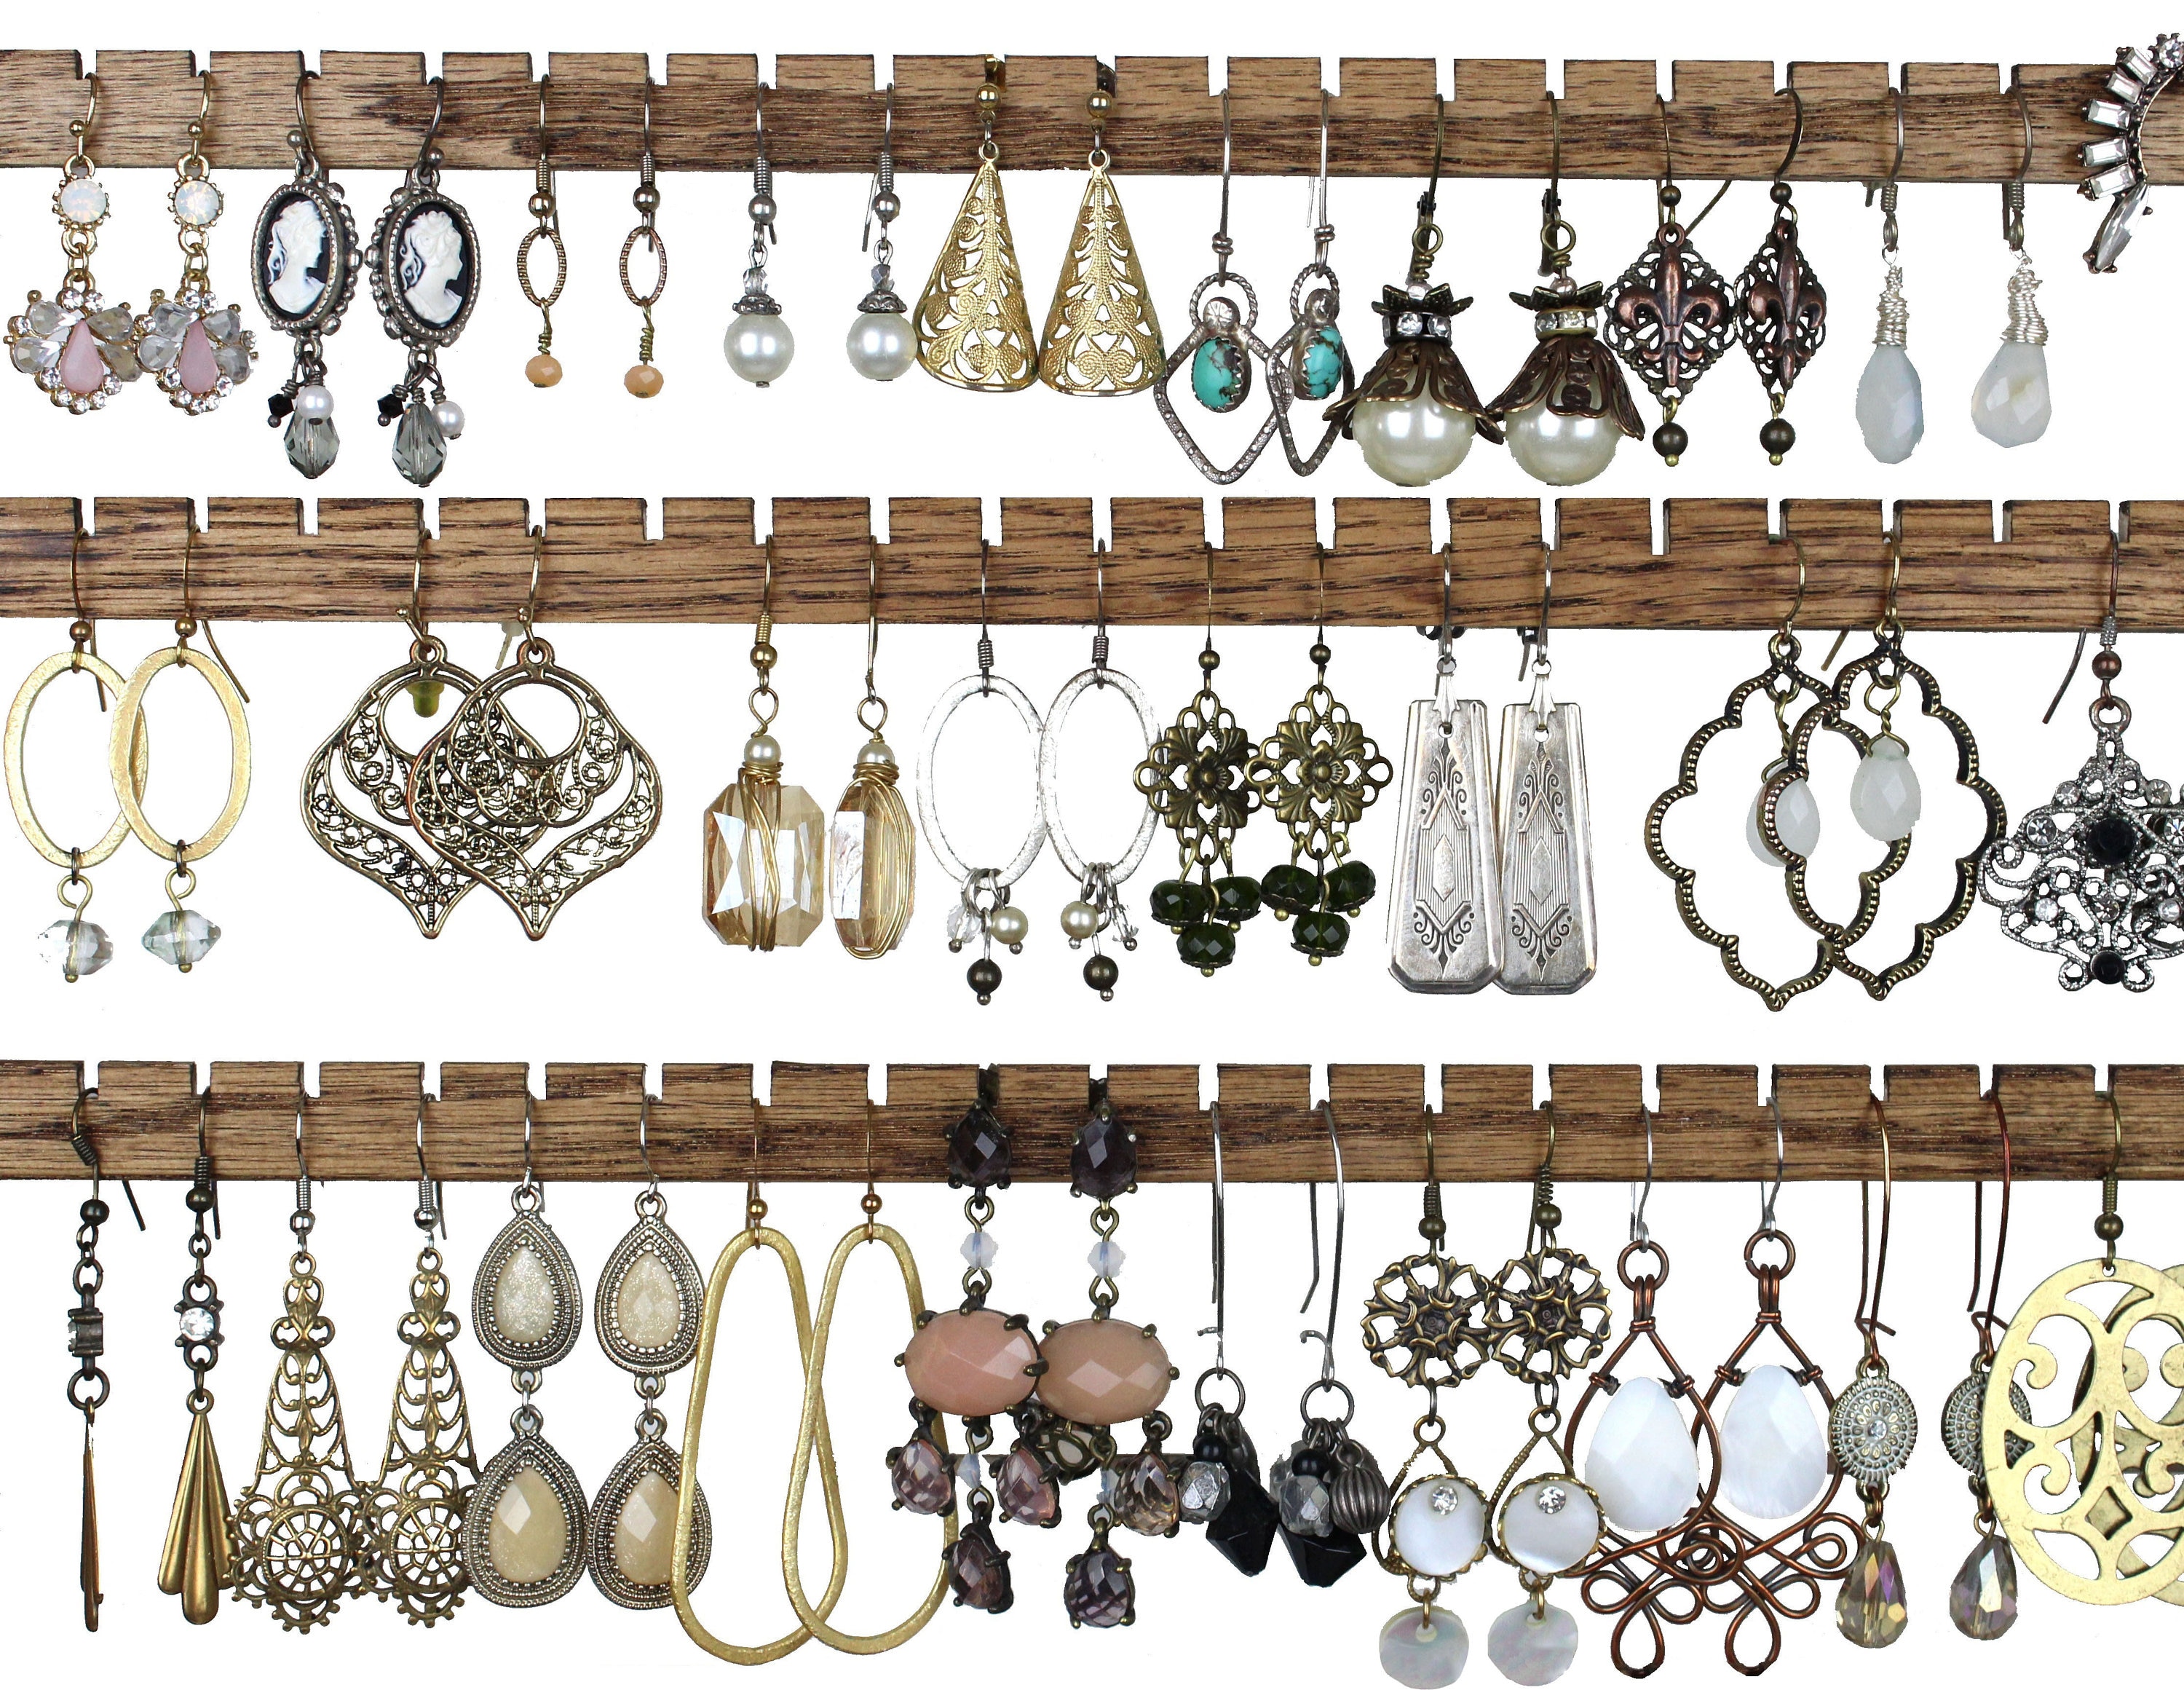 Share more than 149 handmade earring holder latest